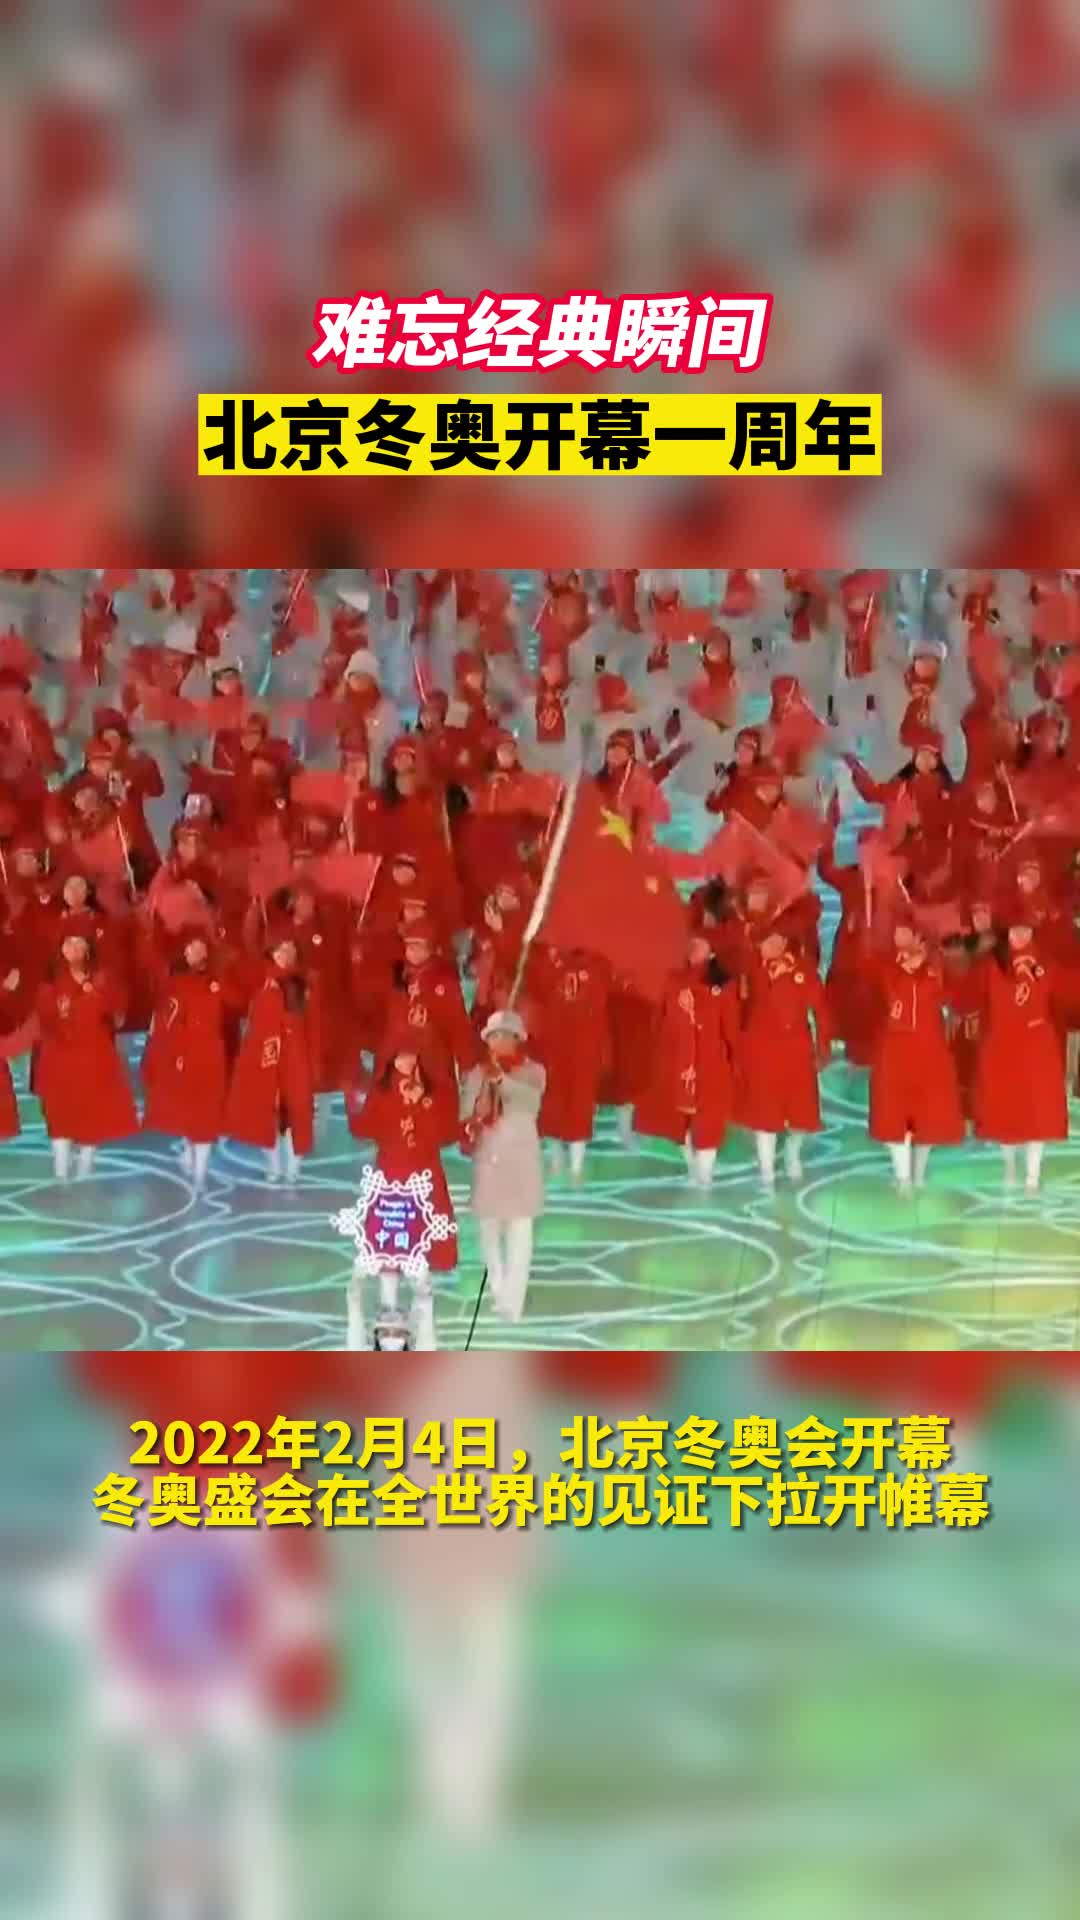 北京冬奥开幕一周年，重温冬奥盛会的难忘经典瞬间